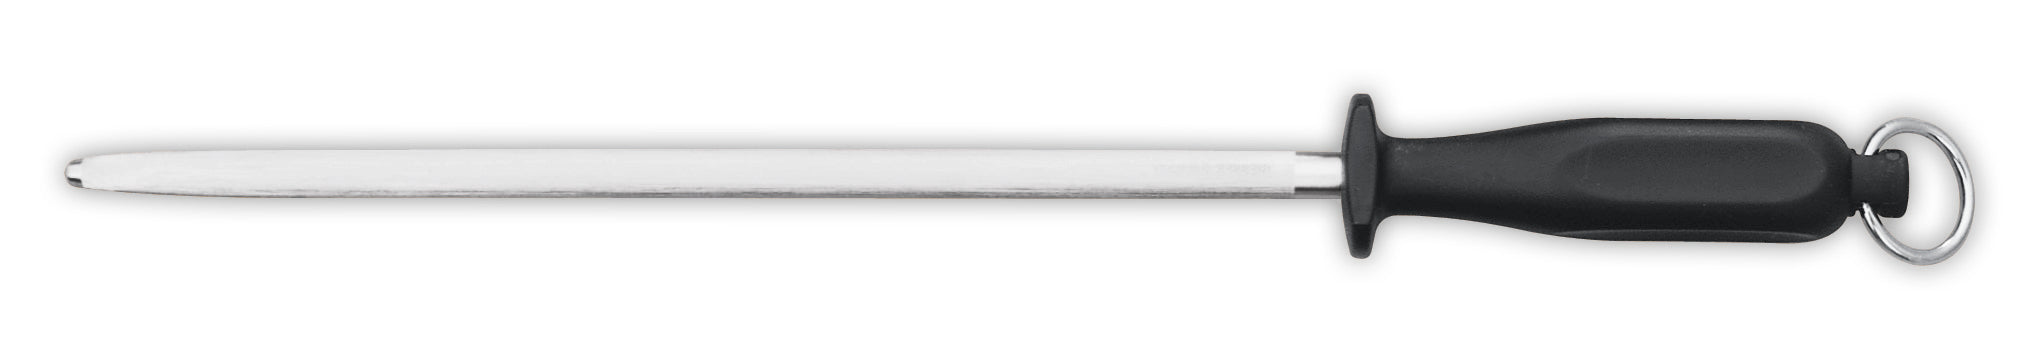 Giesser 31cm / 12" Sharpening Steel